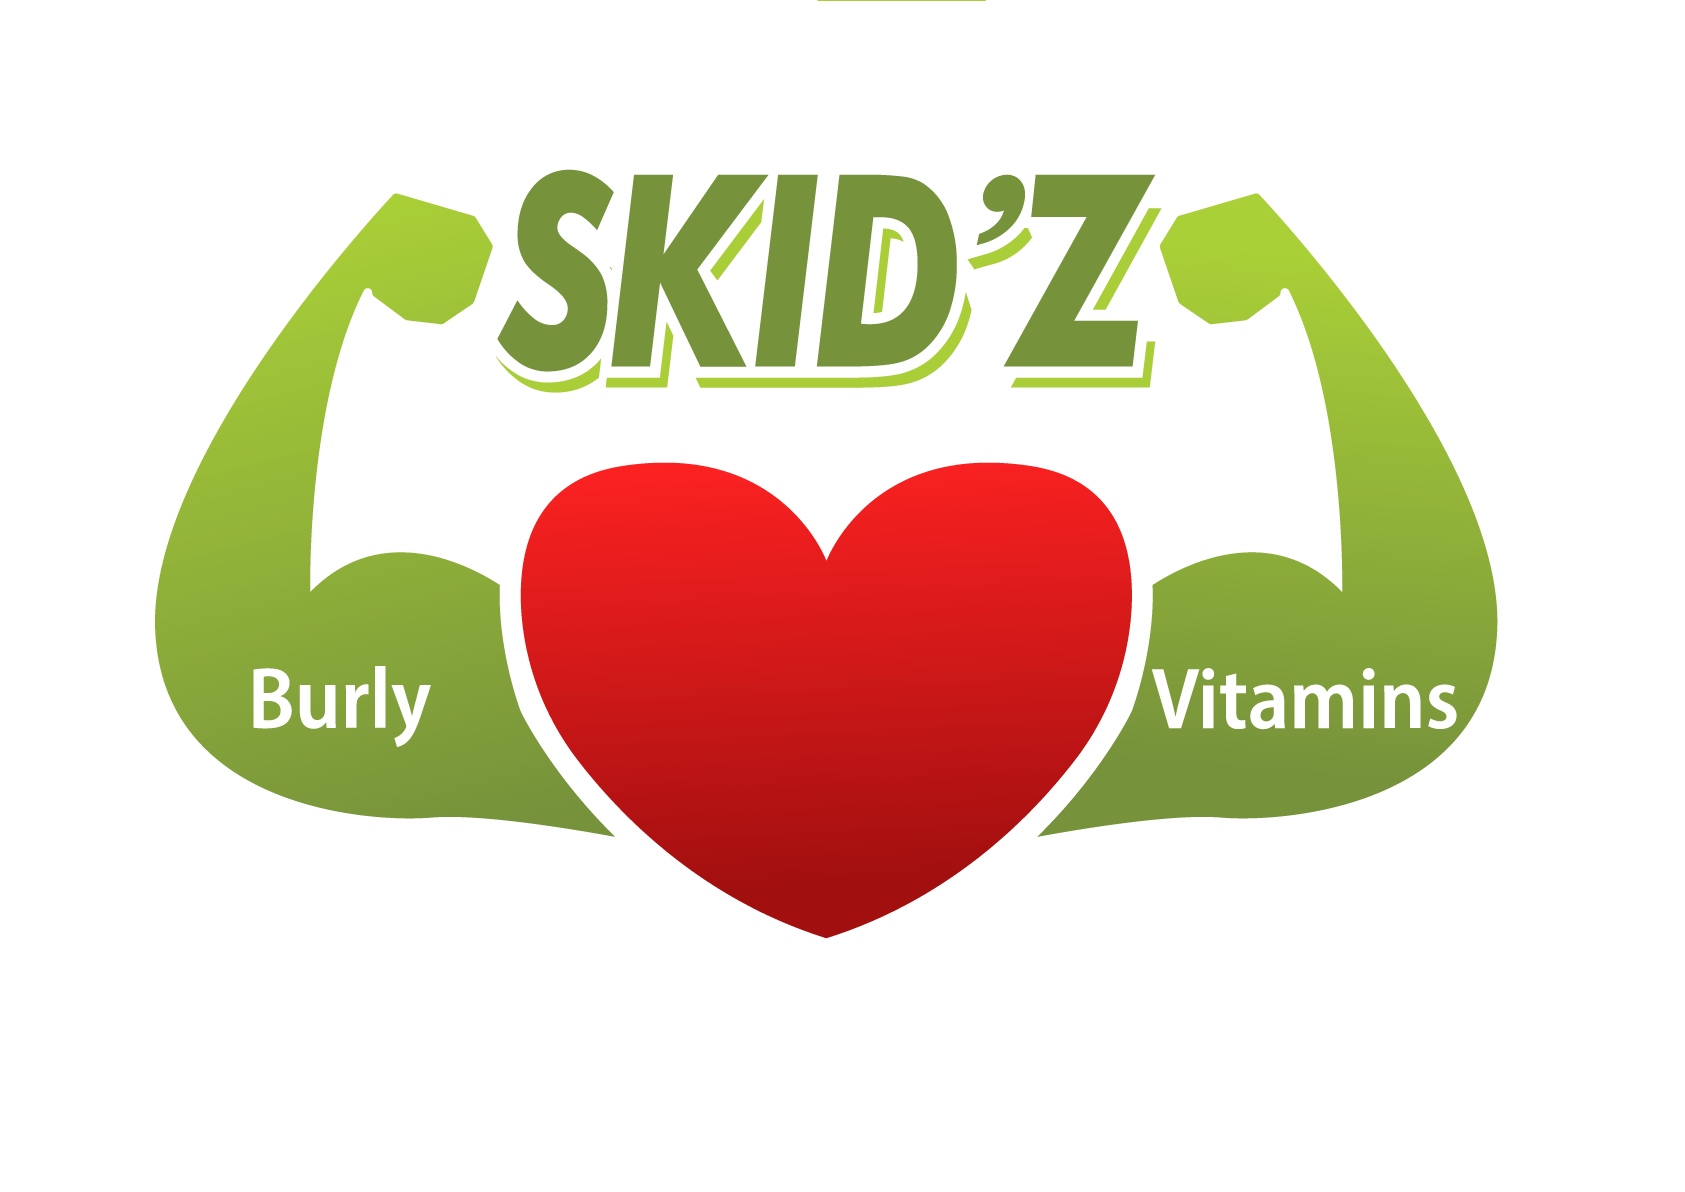 Burly Skidz Vitamins